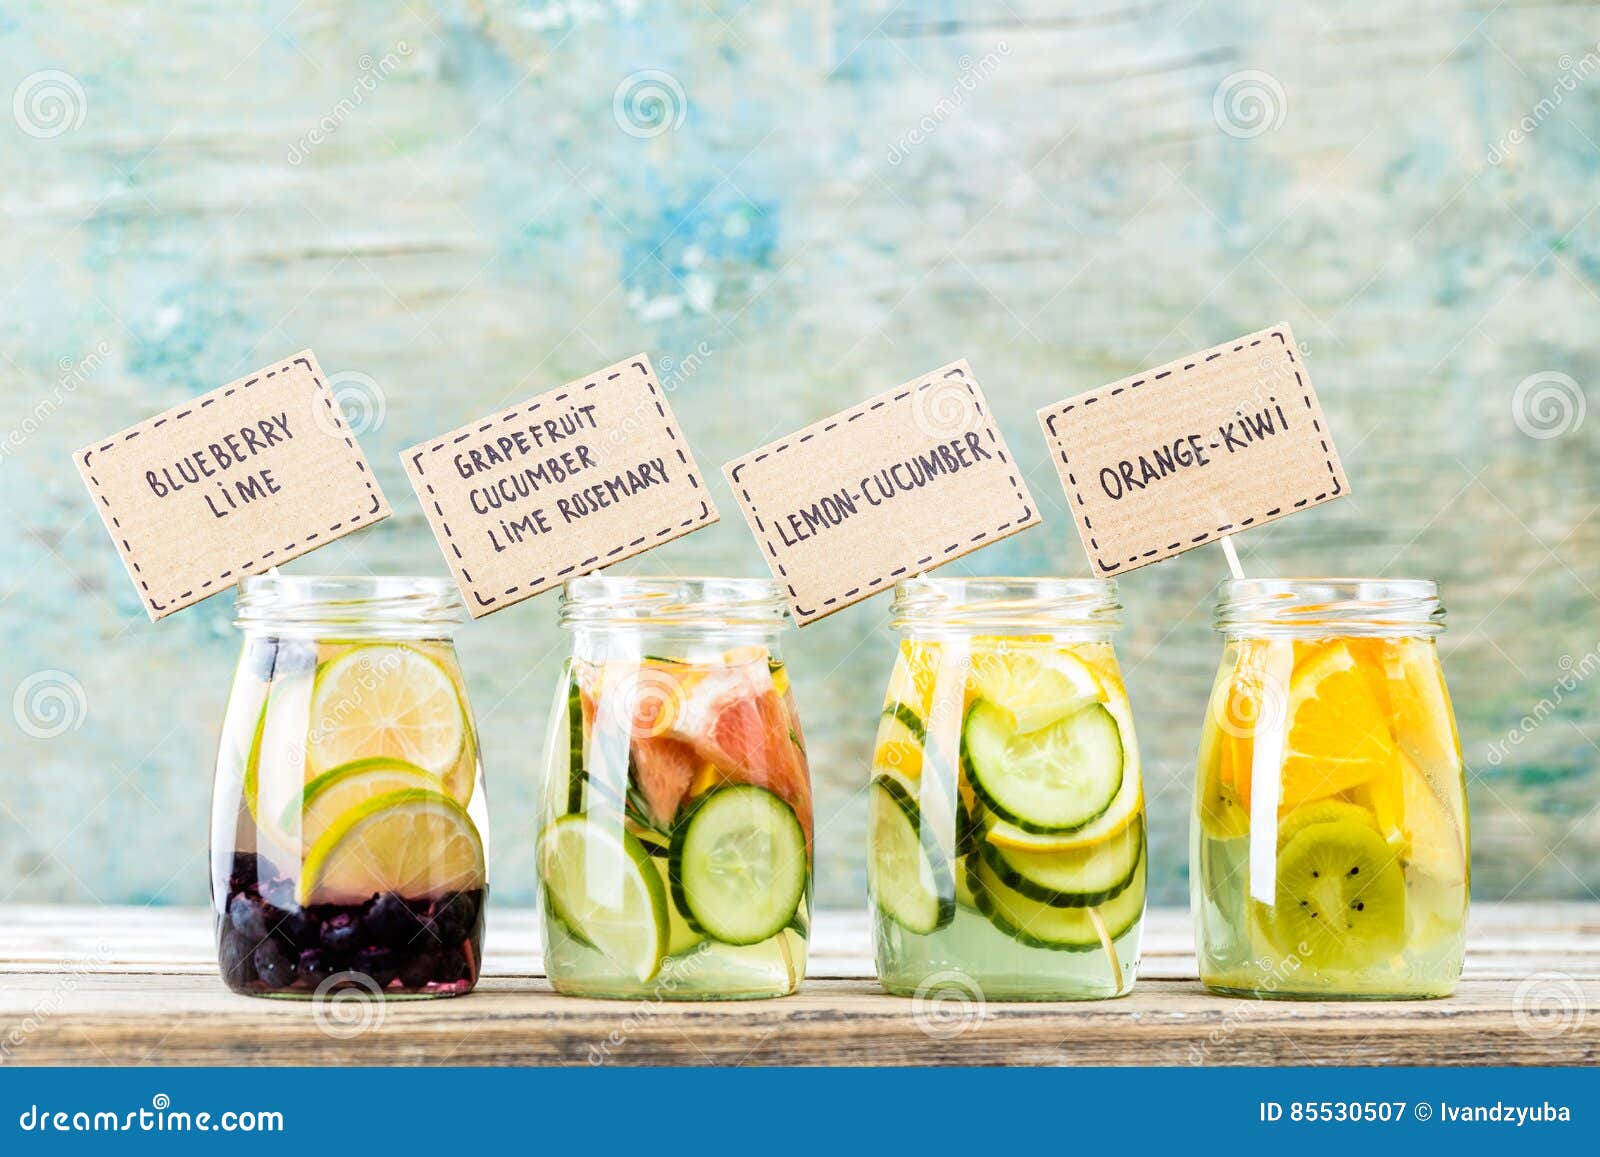 variety of fruit infused detox water in jars